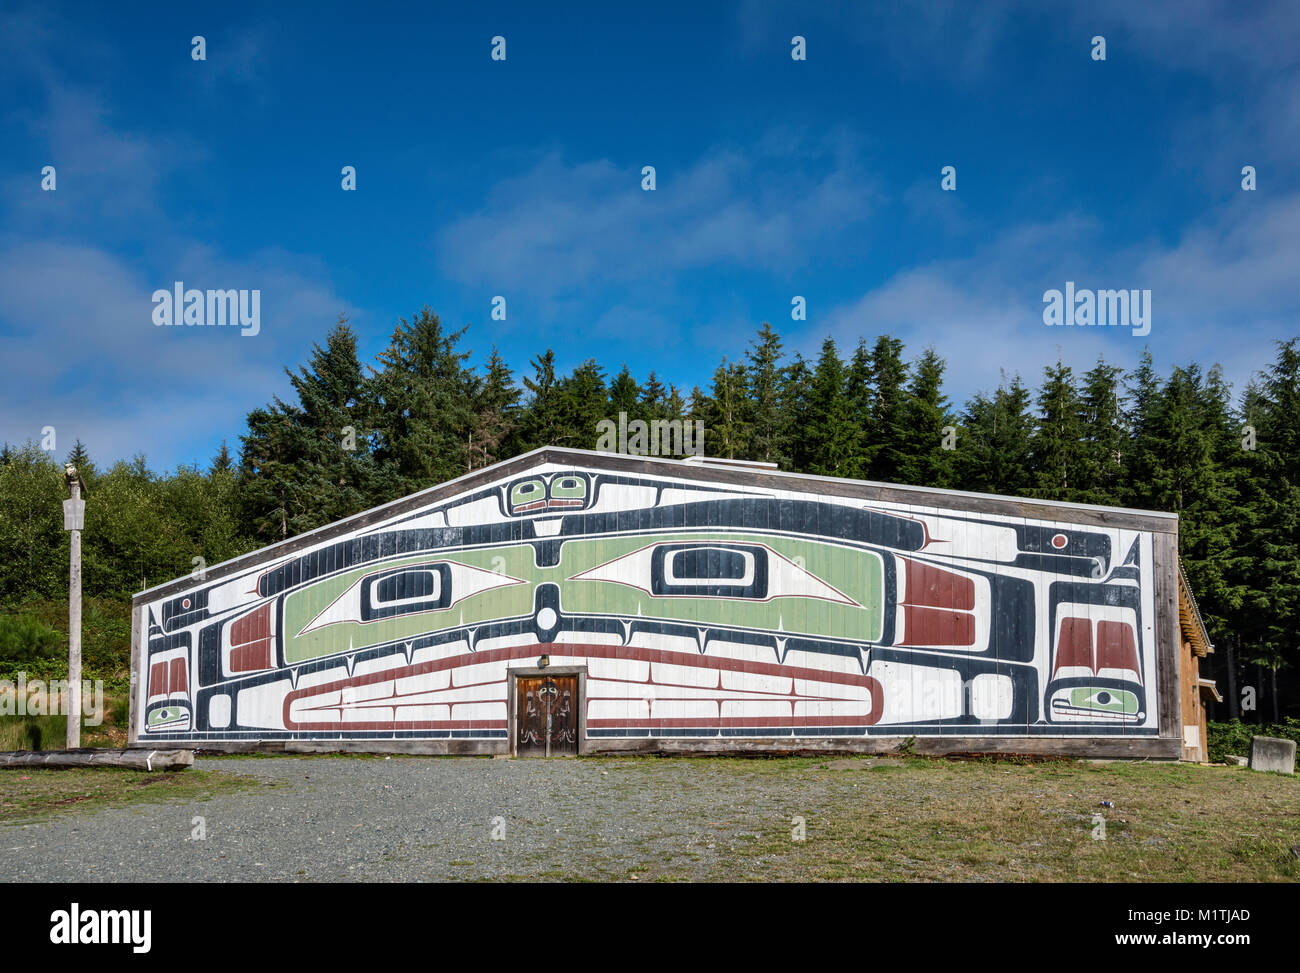 Alert Bay Grande Maison, principalement utilisé pour les potlatchs, village d'Alert Bay sur l'île Cormorant, au nord de l'île de Vancouver, Colombie-Britannique, Canada Banque D'Images